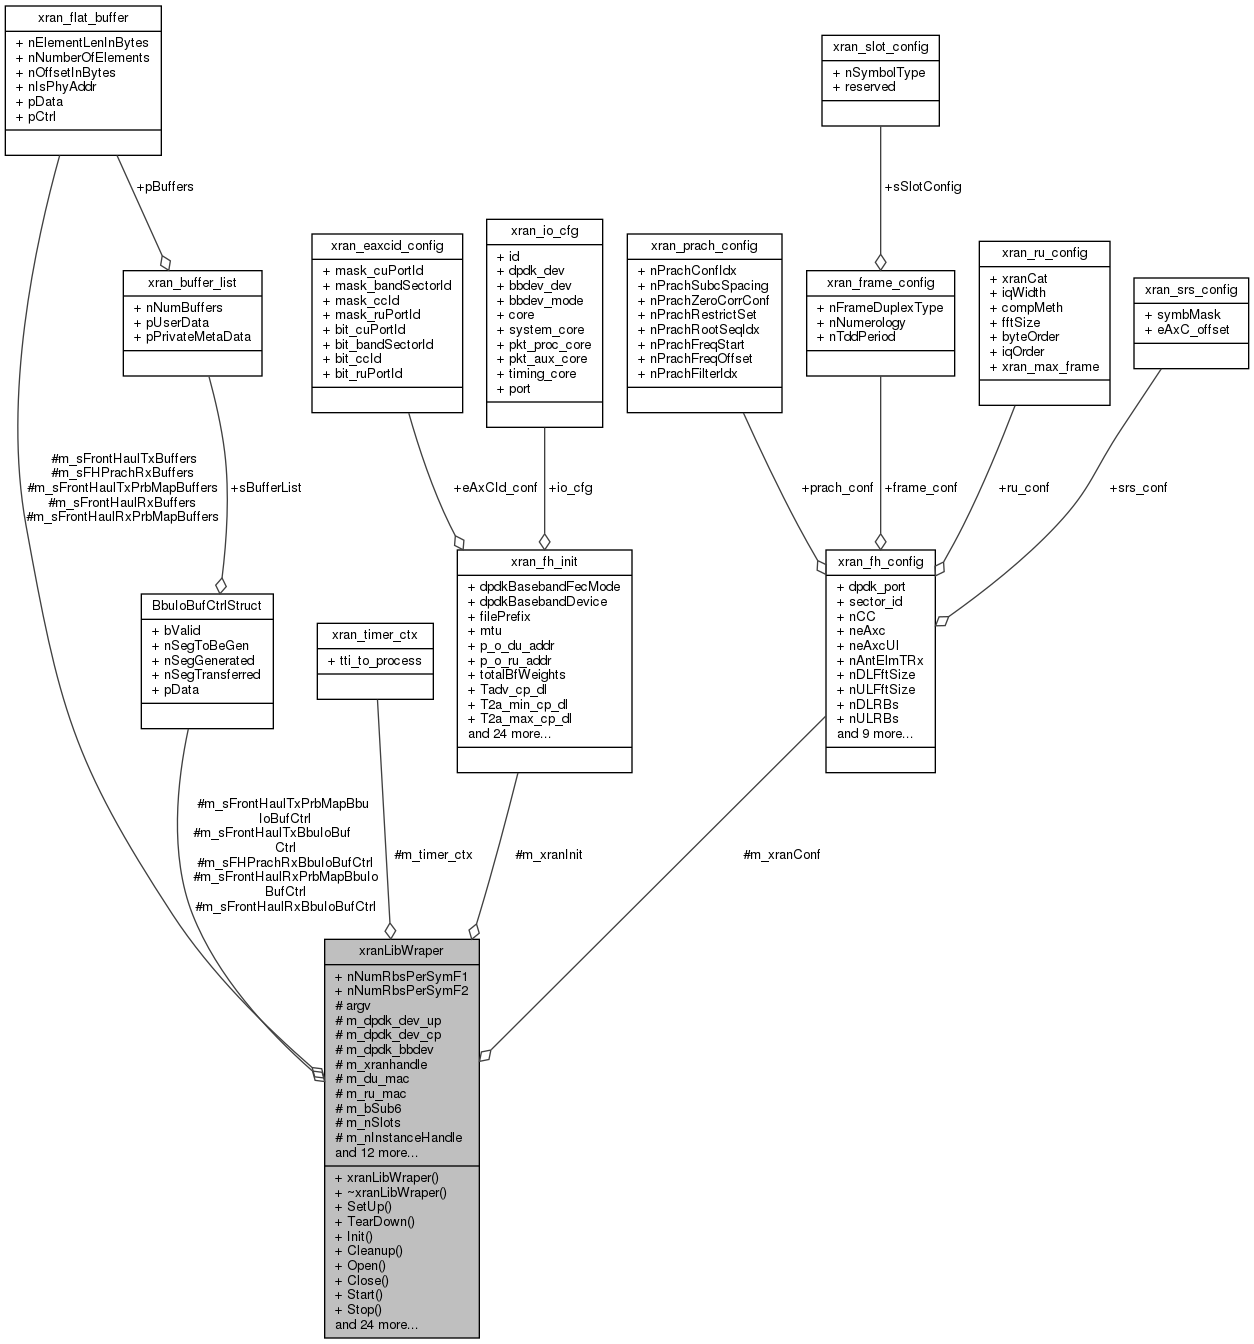 docs/API/classxran_lib_wraper__coll__graph.png